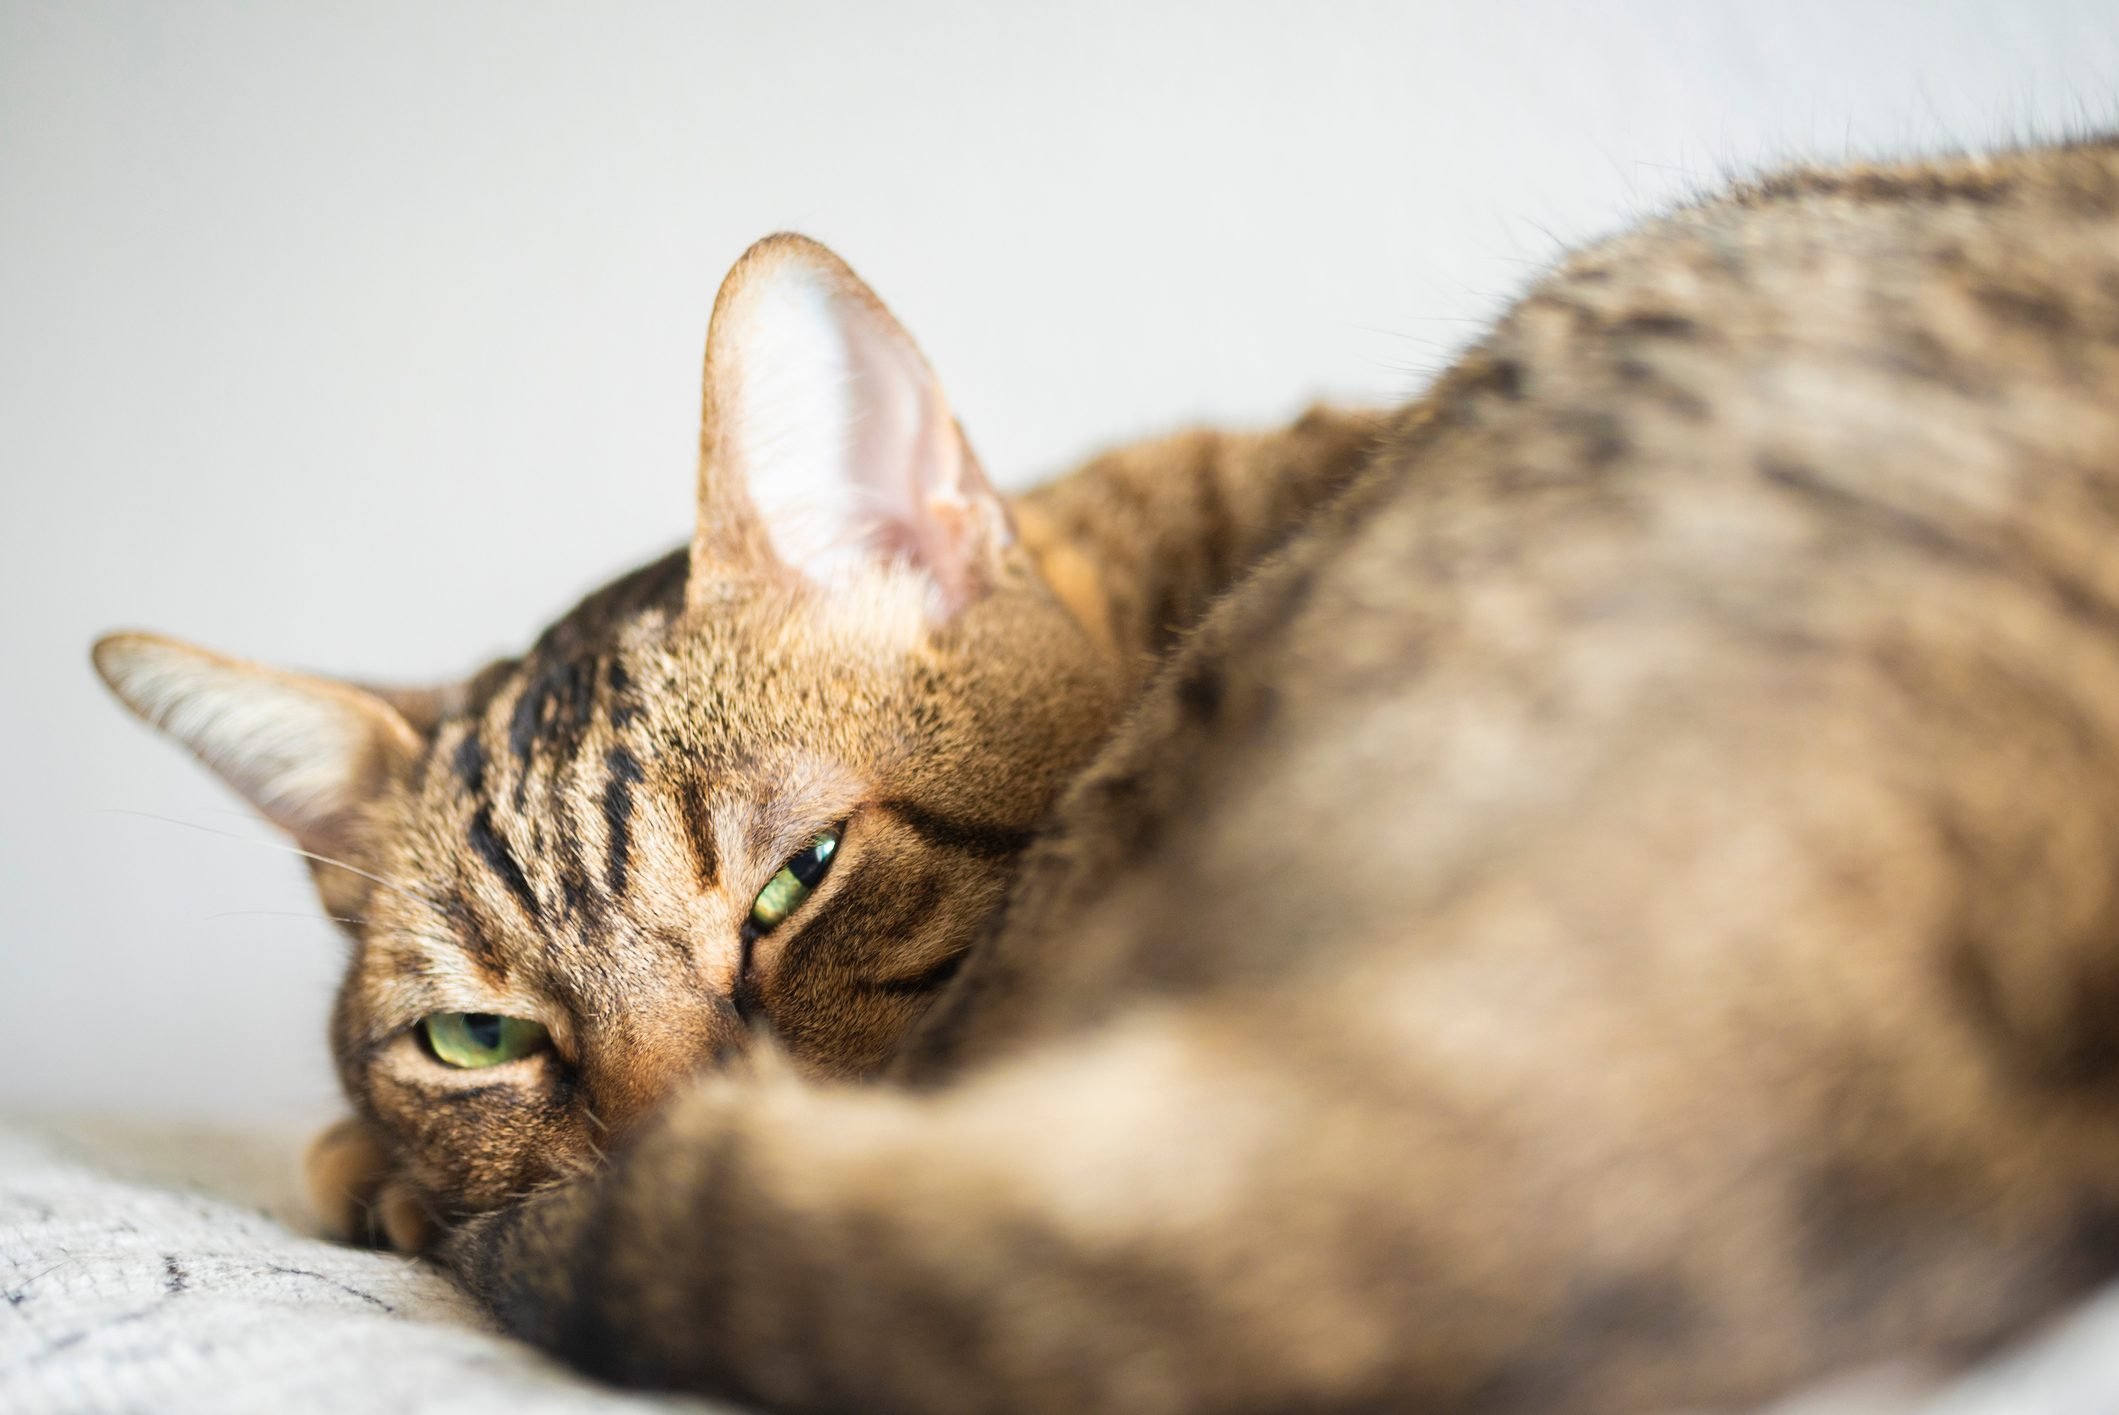 Khi con mèo ở tư thế thoải mái và đánh đuôi xuống sàn, nó có thể đang buồn bã hoặc suy nghĩ về điều gì đó